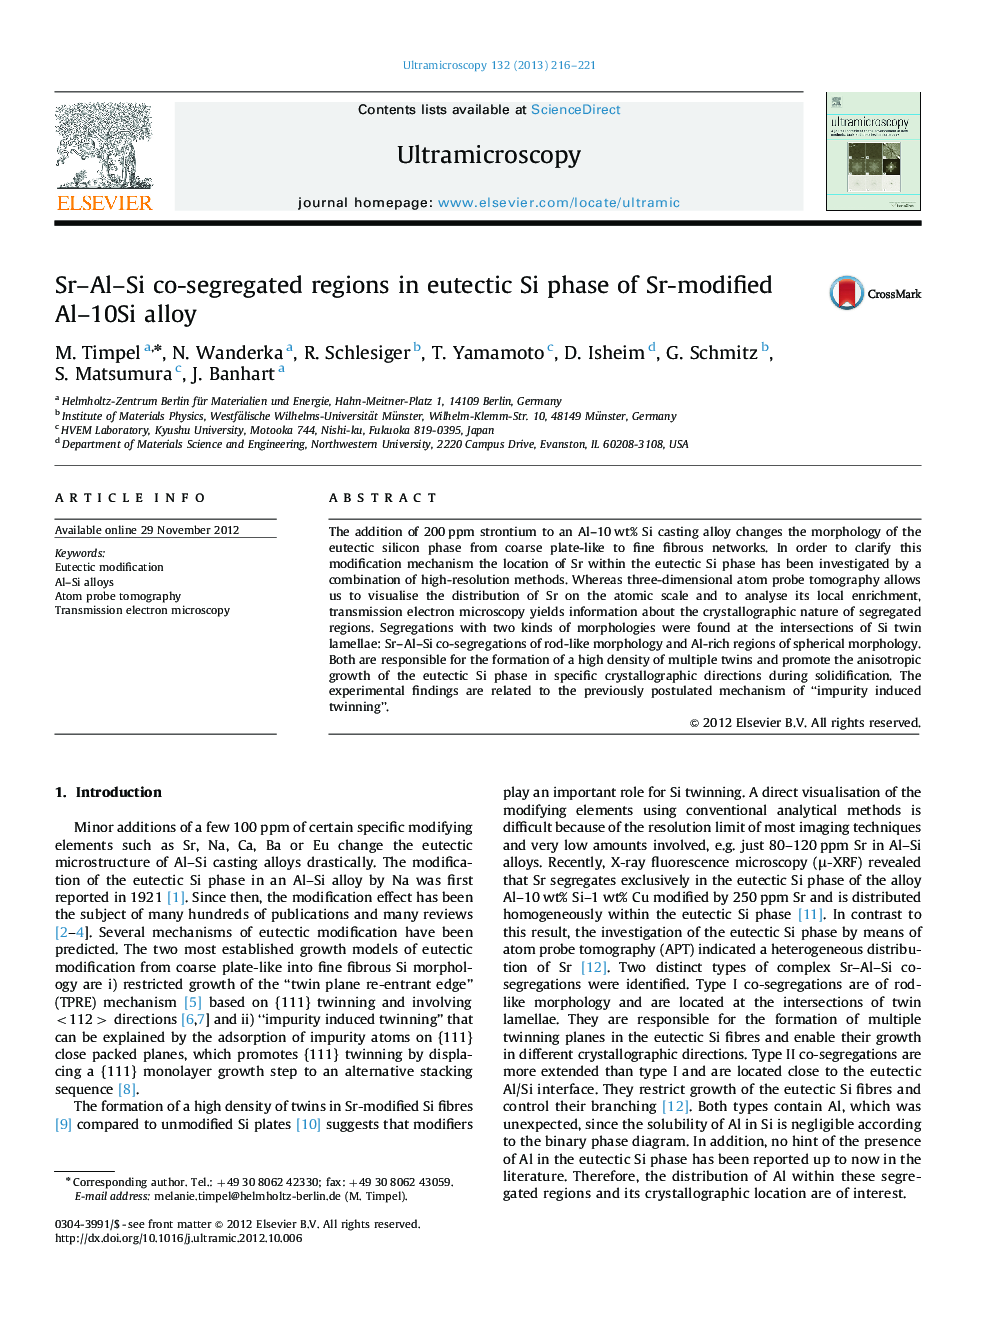 Sr–Al–Si co-segregated regions in eutectic Si phase of Sr-modified Al–10Si alloy